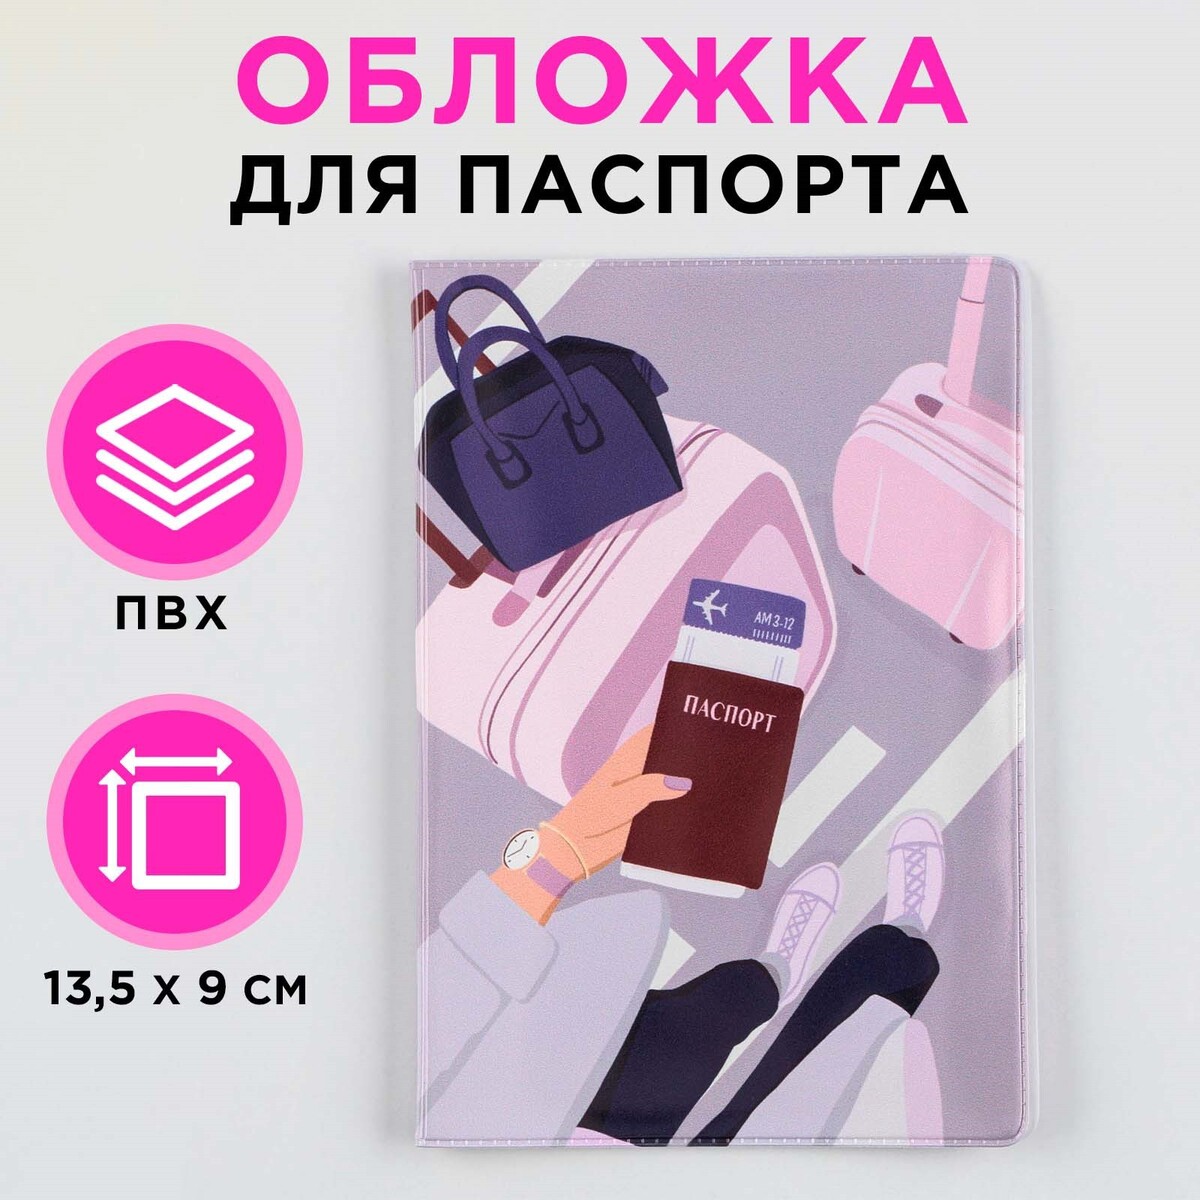 Обложка для паспорта обложка пвх 225 х 455 мм 100 мкм для дневника в тв переплете и учебников ной клапан универсальная микс